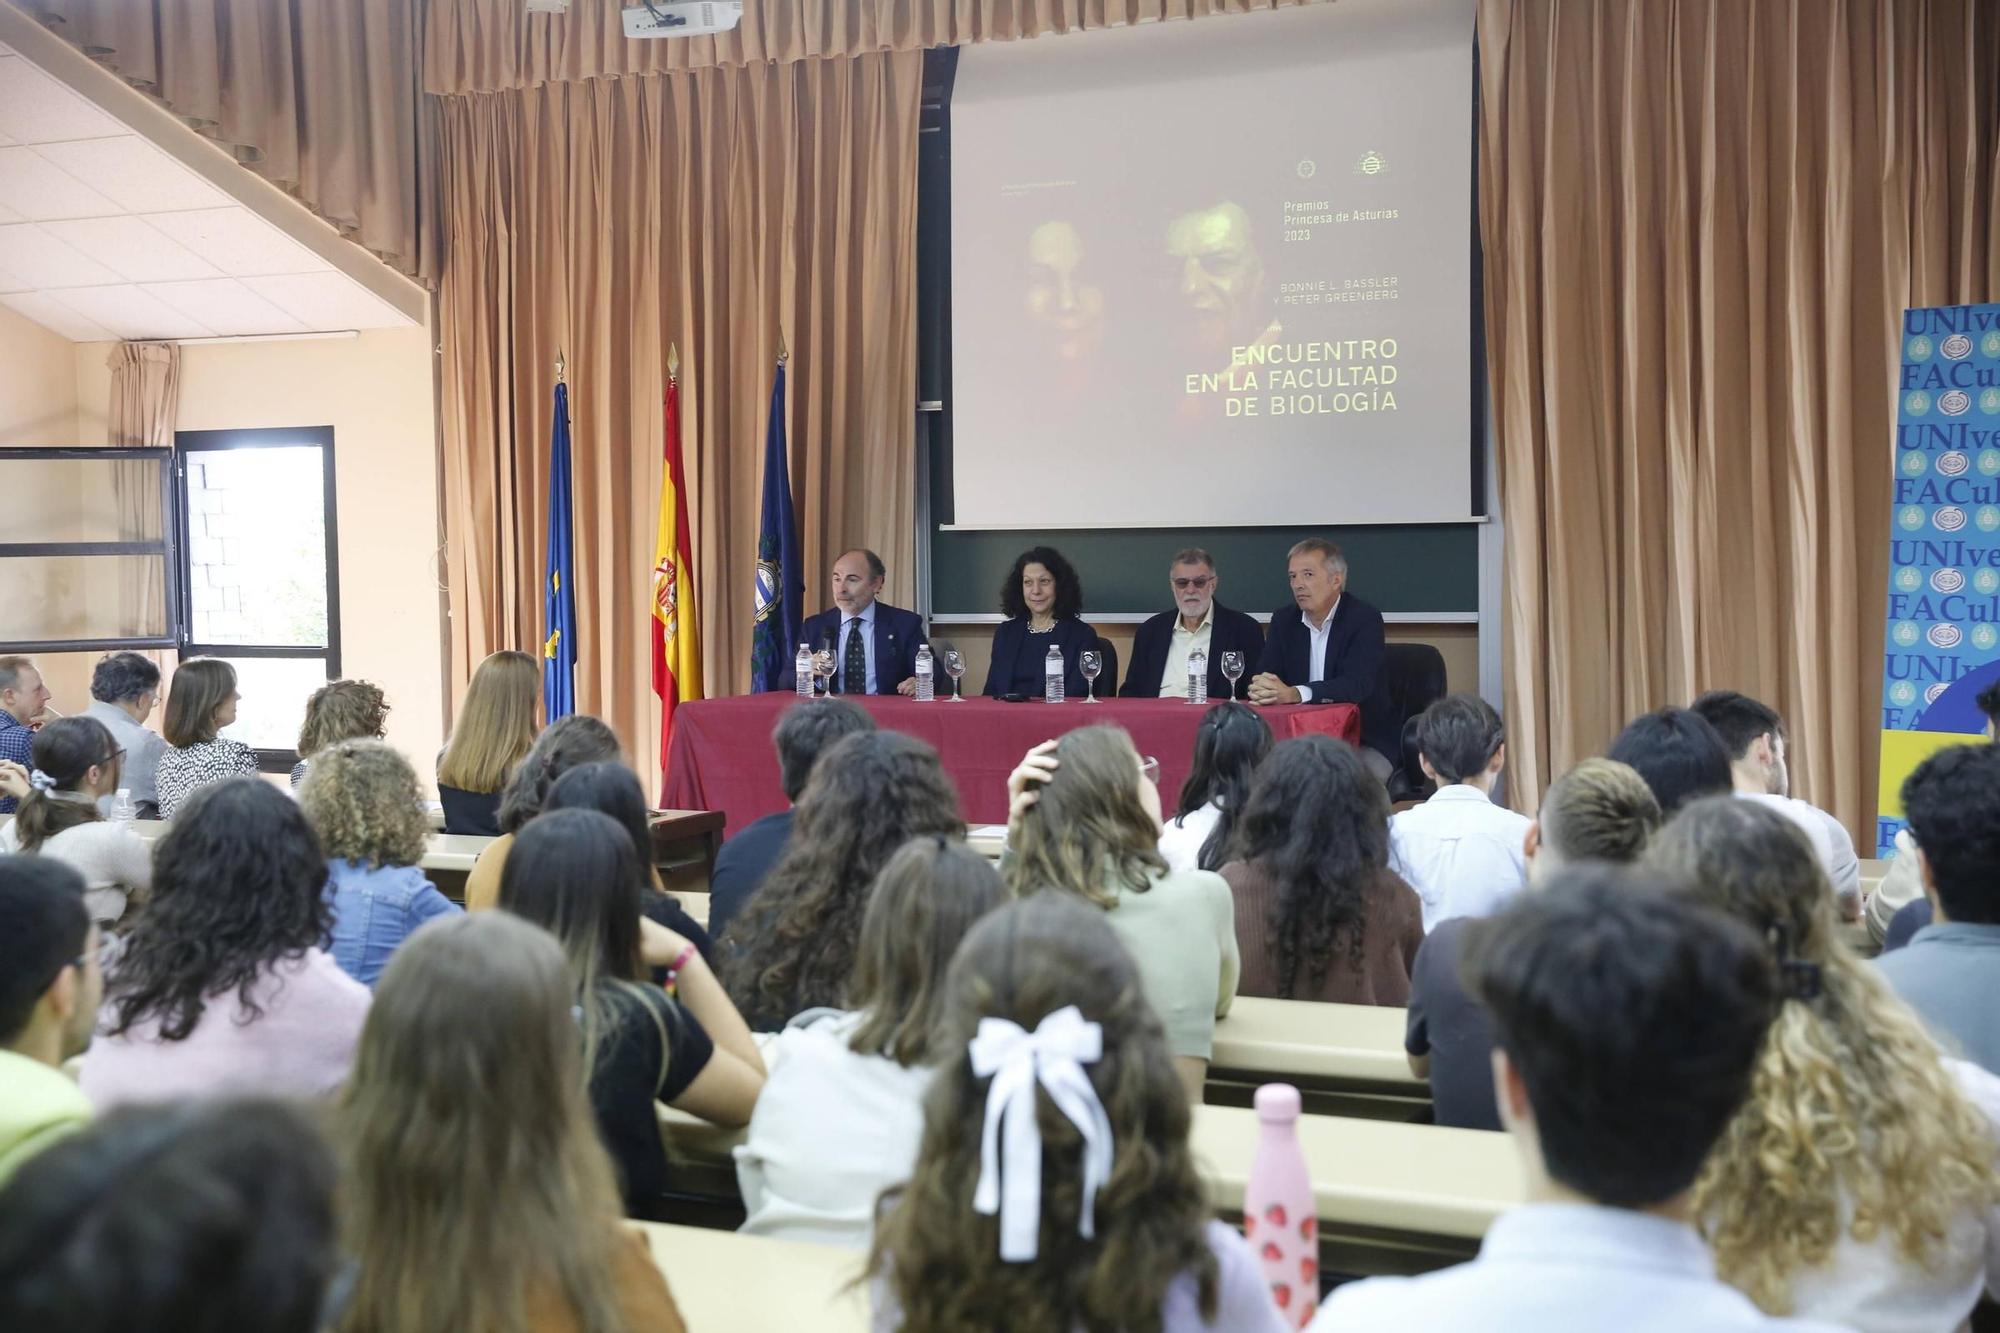 EN IMÁGENES: Los Premios "Princesa de Asturias" de Ciencias visitan la facultad de Biología.